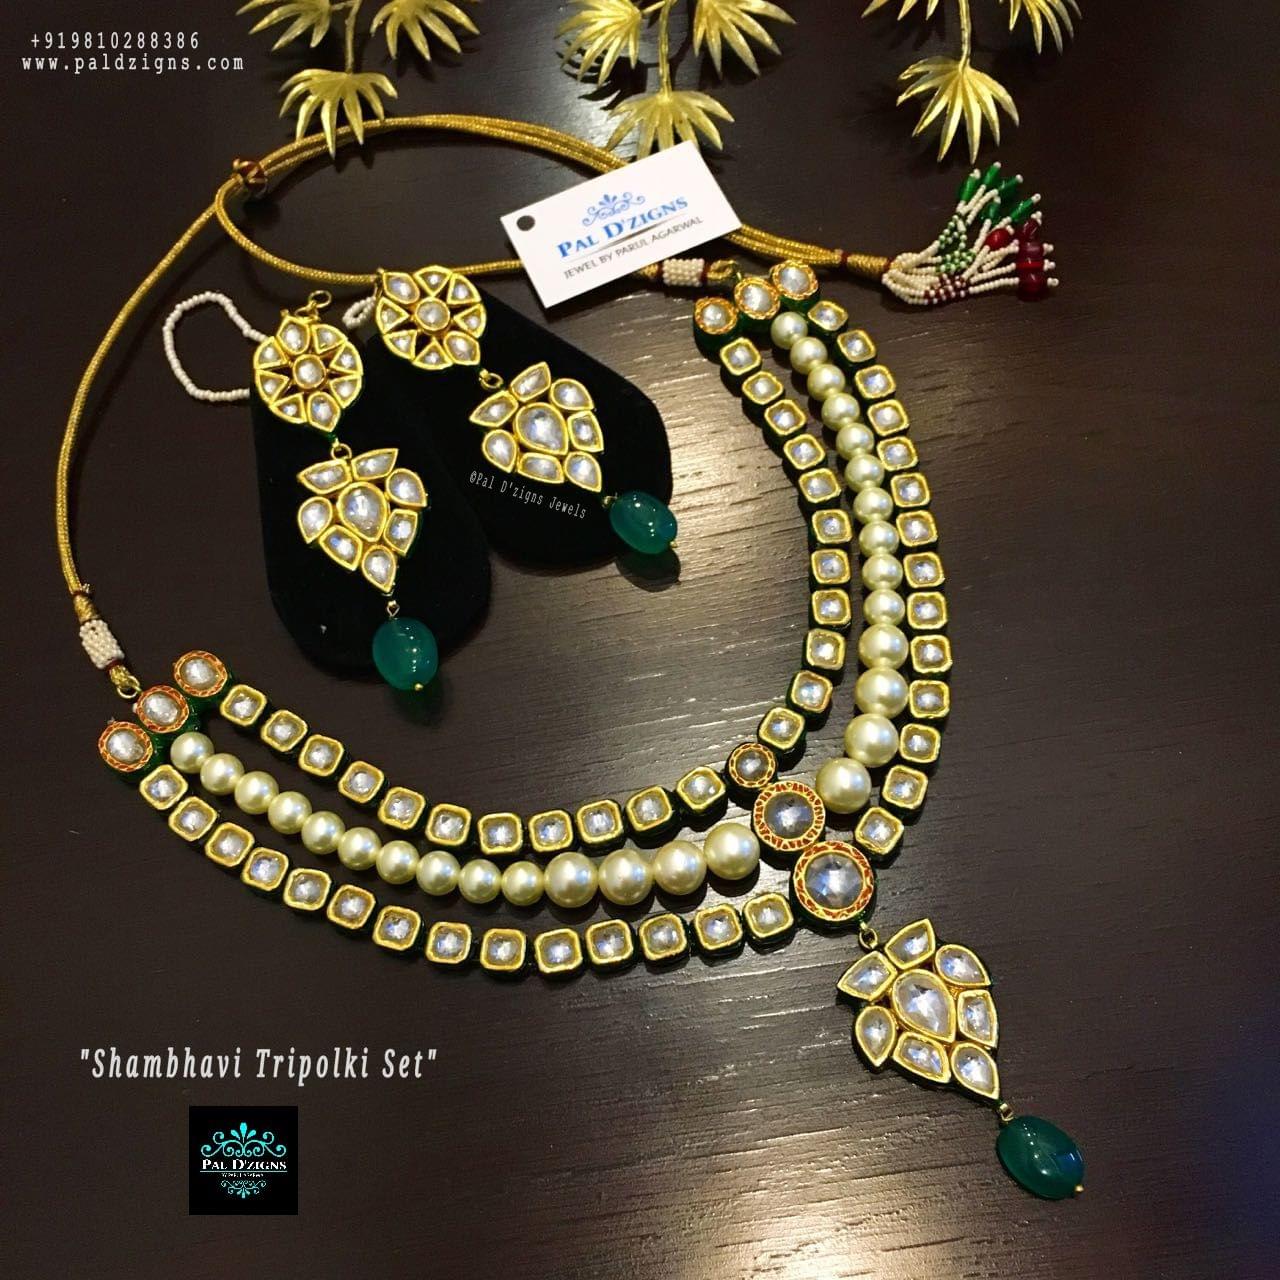 Shambhavi Tripolki Necklace Set